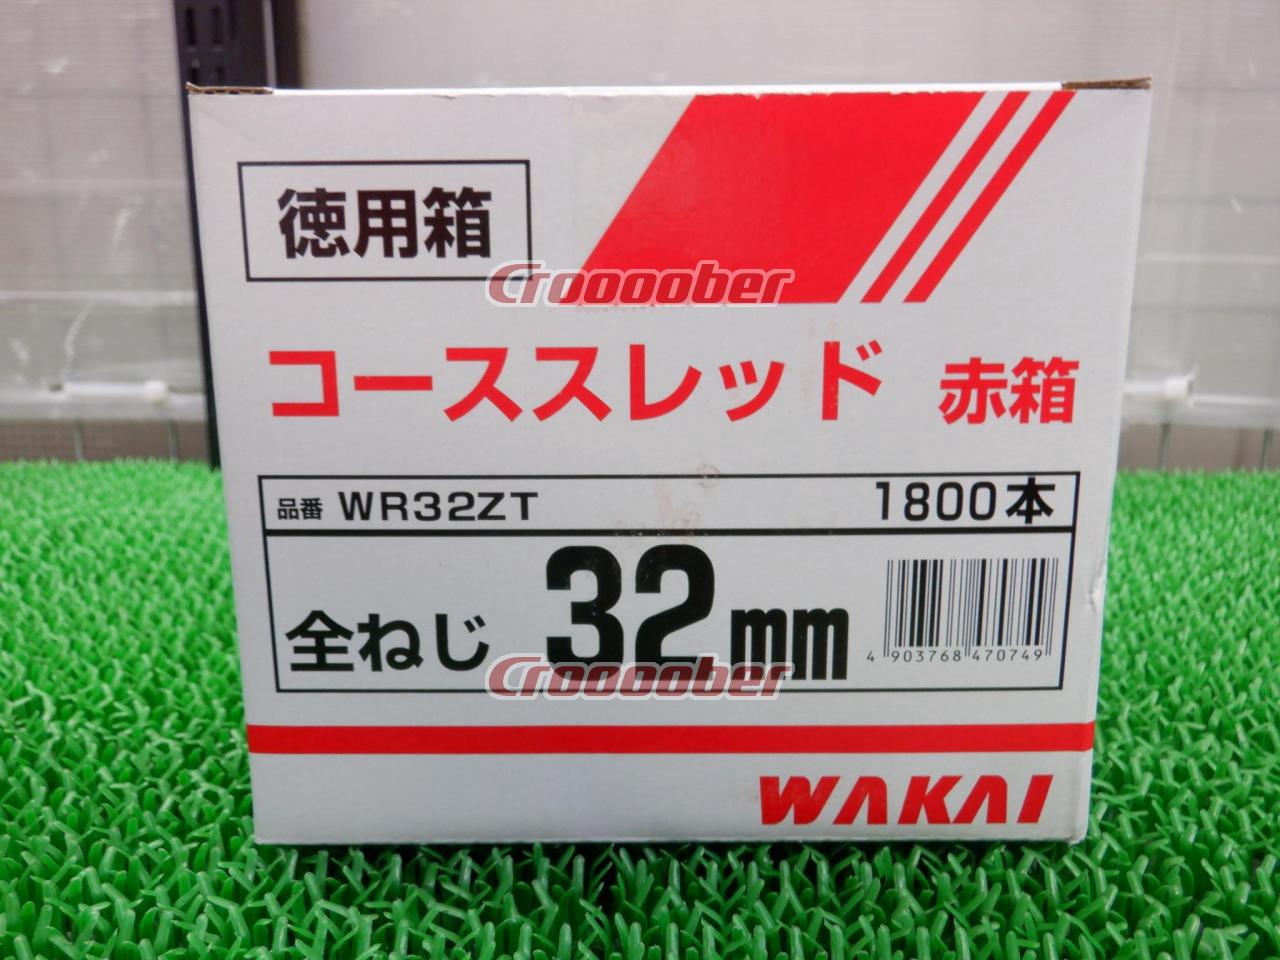 若井産業/wakai コーススレッド ラッパ 徳用箱 赤箱 wr32zt 32mm 全 